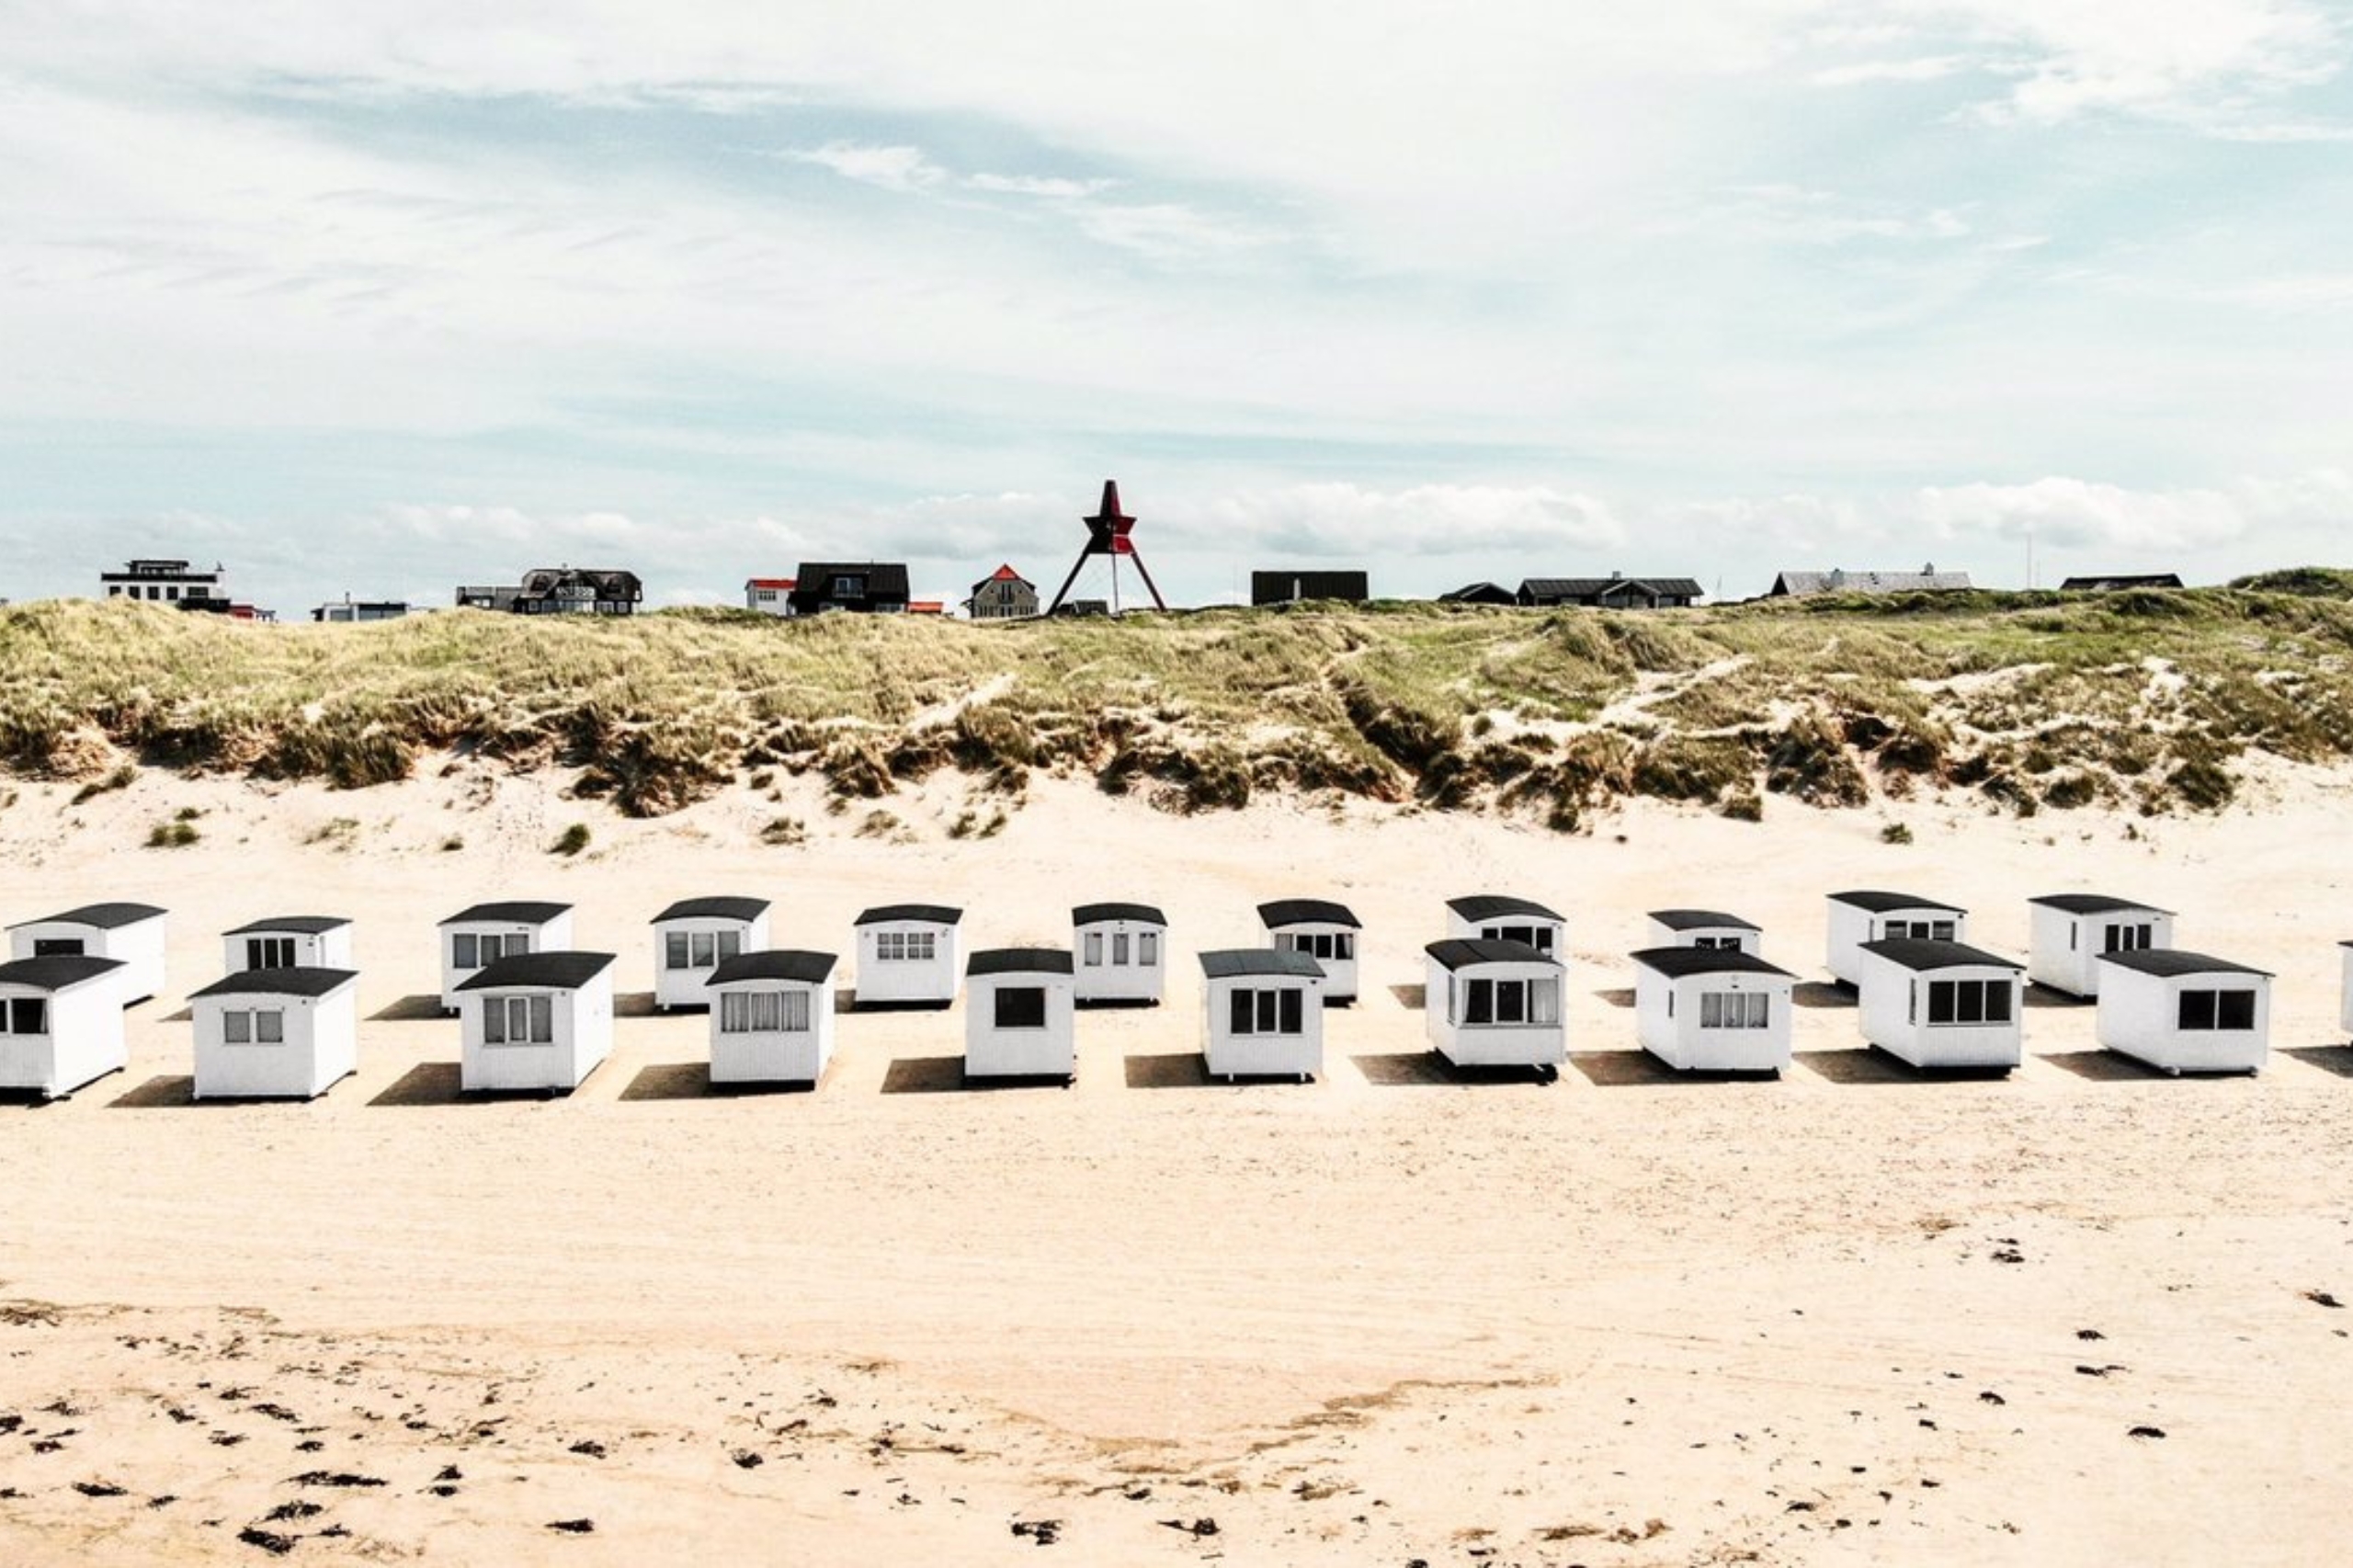 Næsten 500 historiske hvide badehuse ligger langs Løkken Strand og udgør et godt fotomotiv! Copyright: Daniel Brandt Andersen / Visit Denmark